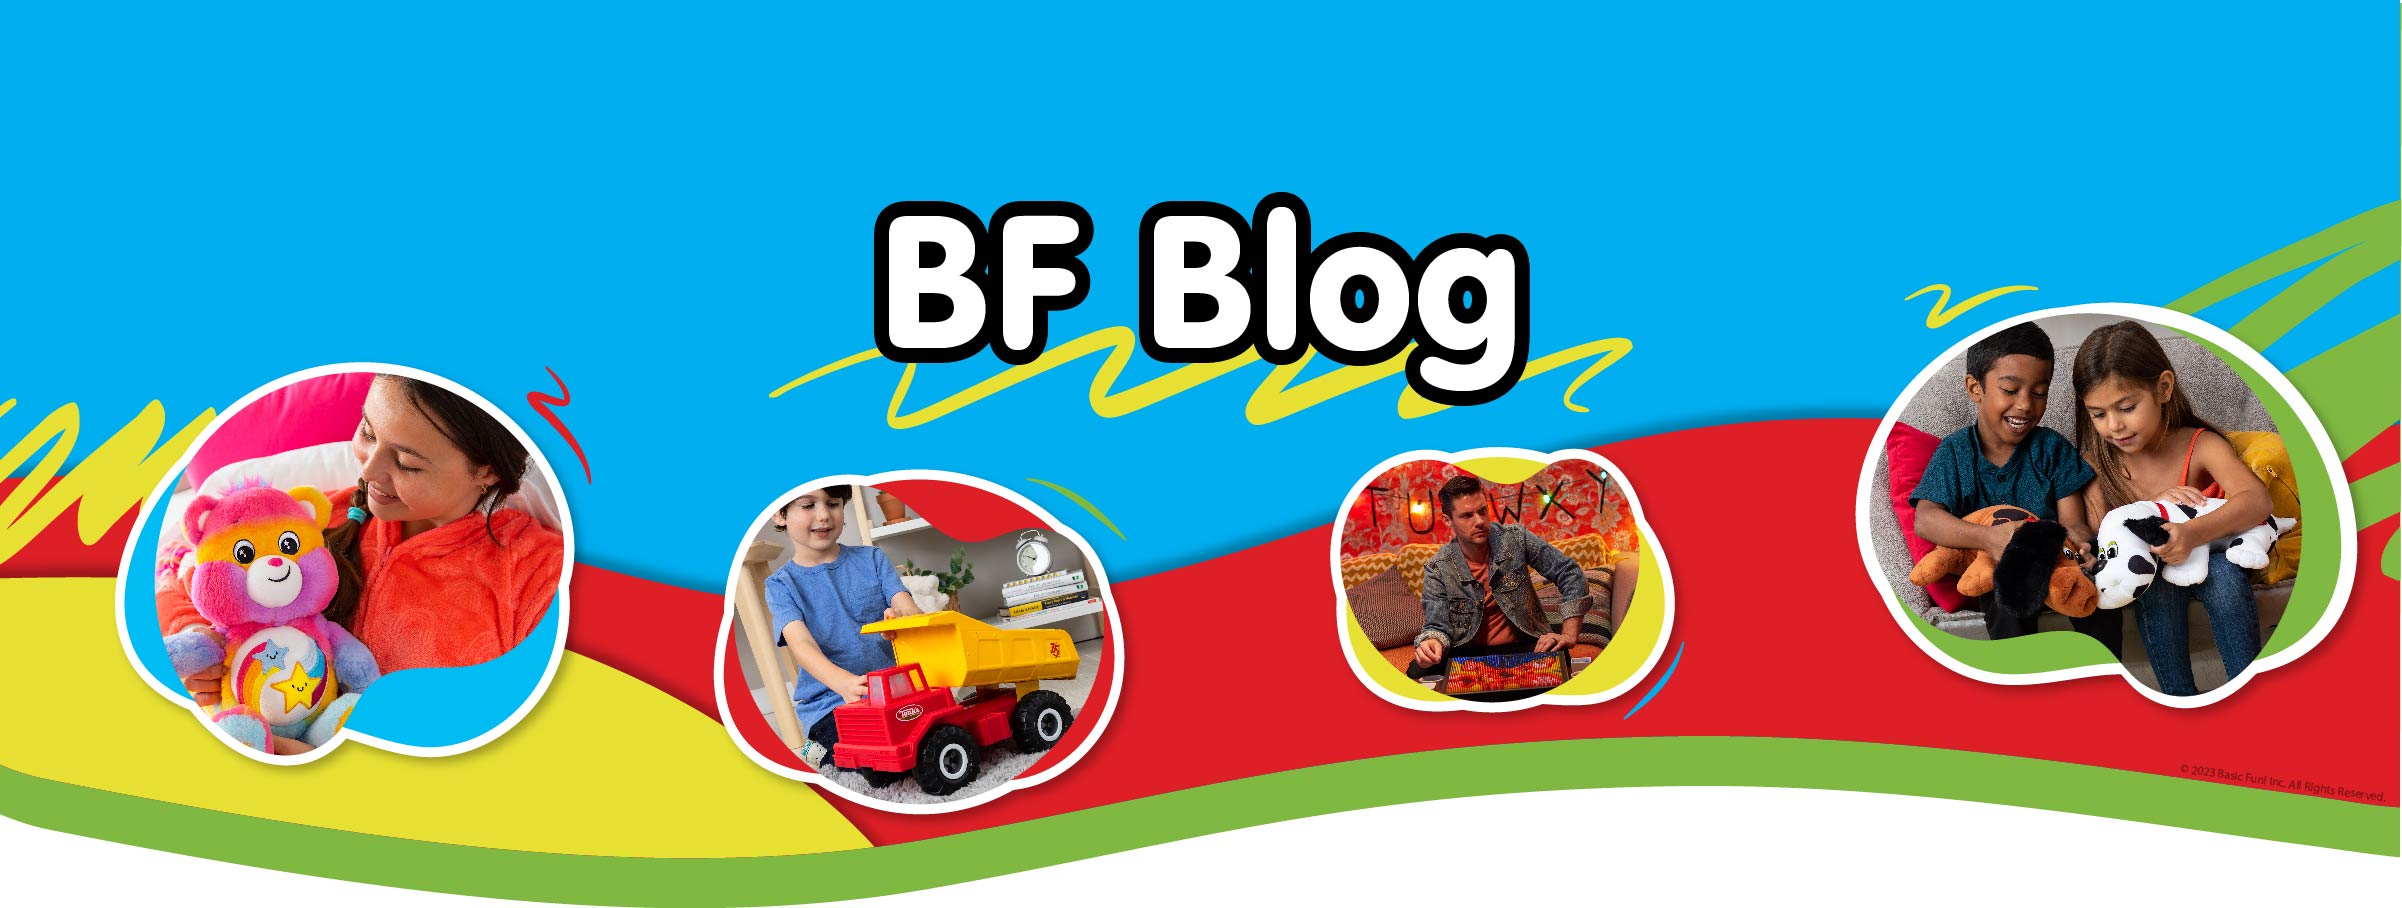 Basic Fun Blog Posts